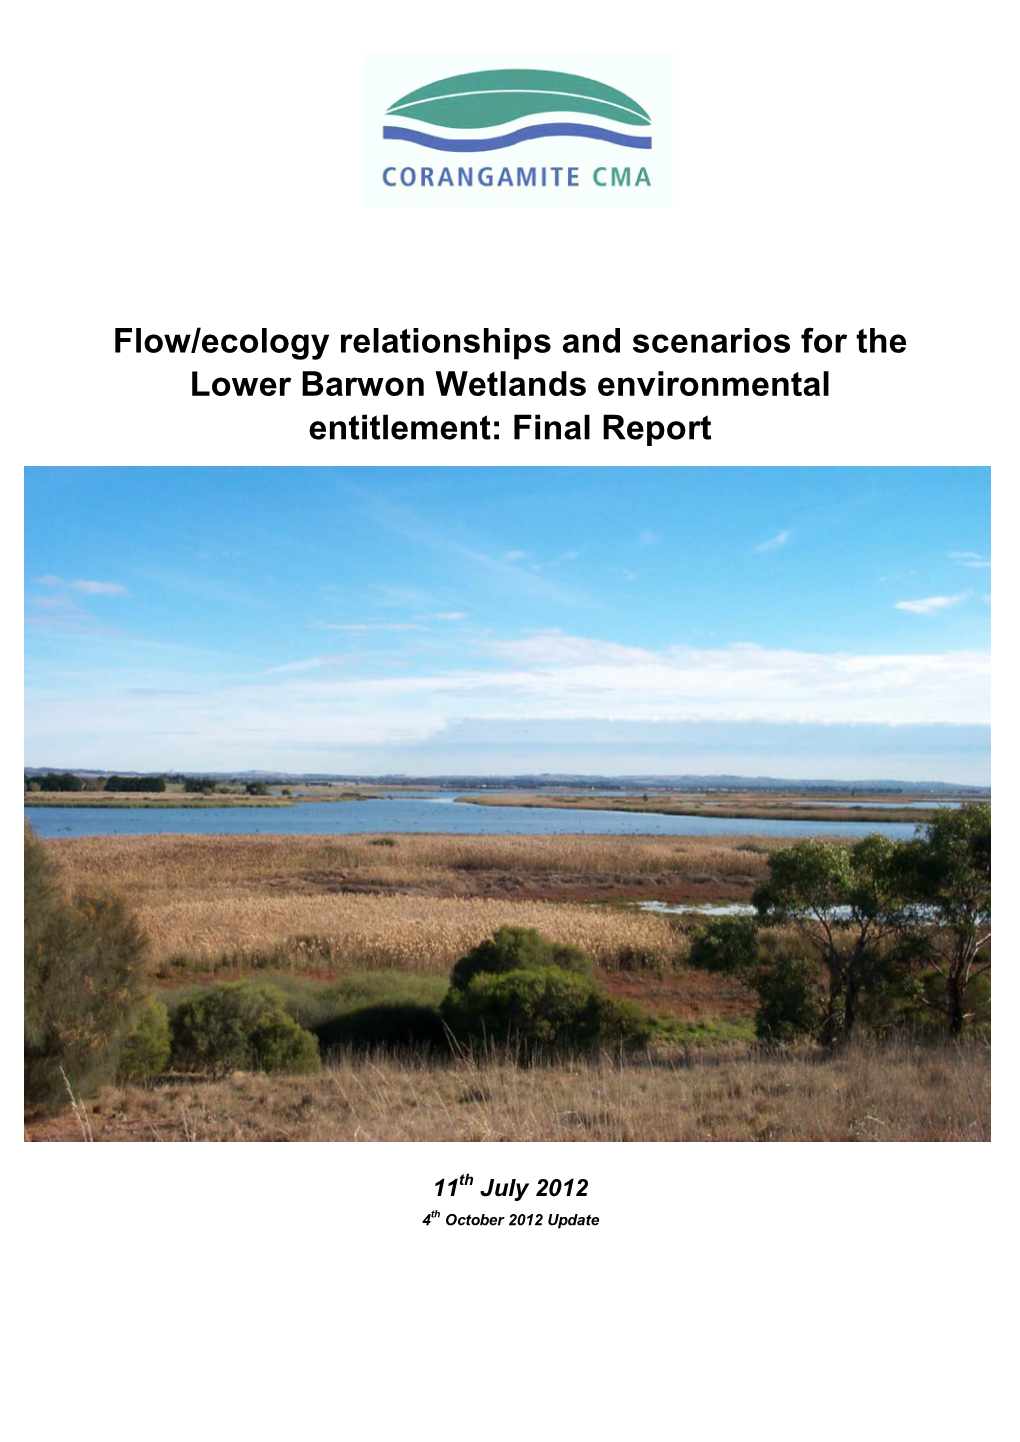 Lower Barwon Wetlands Environmental Entitlement: Final Report